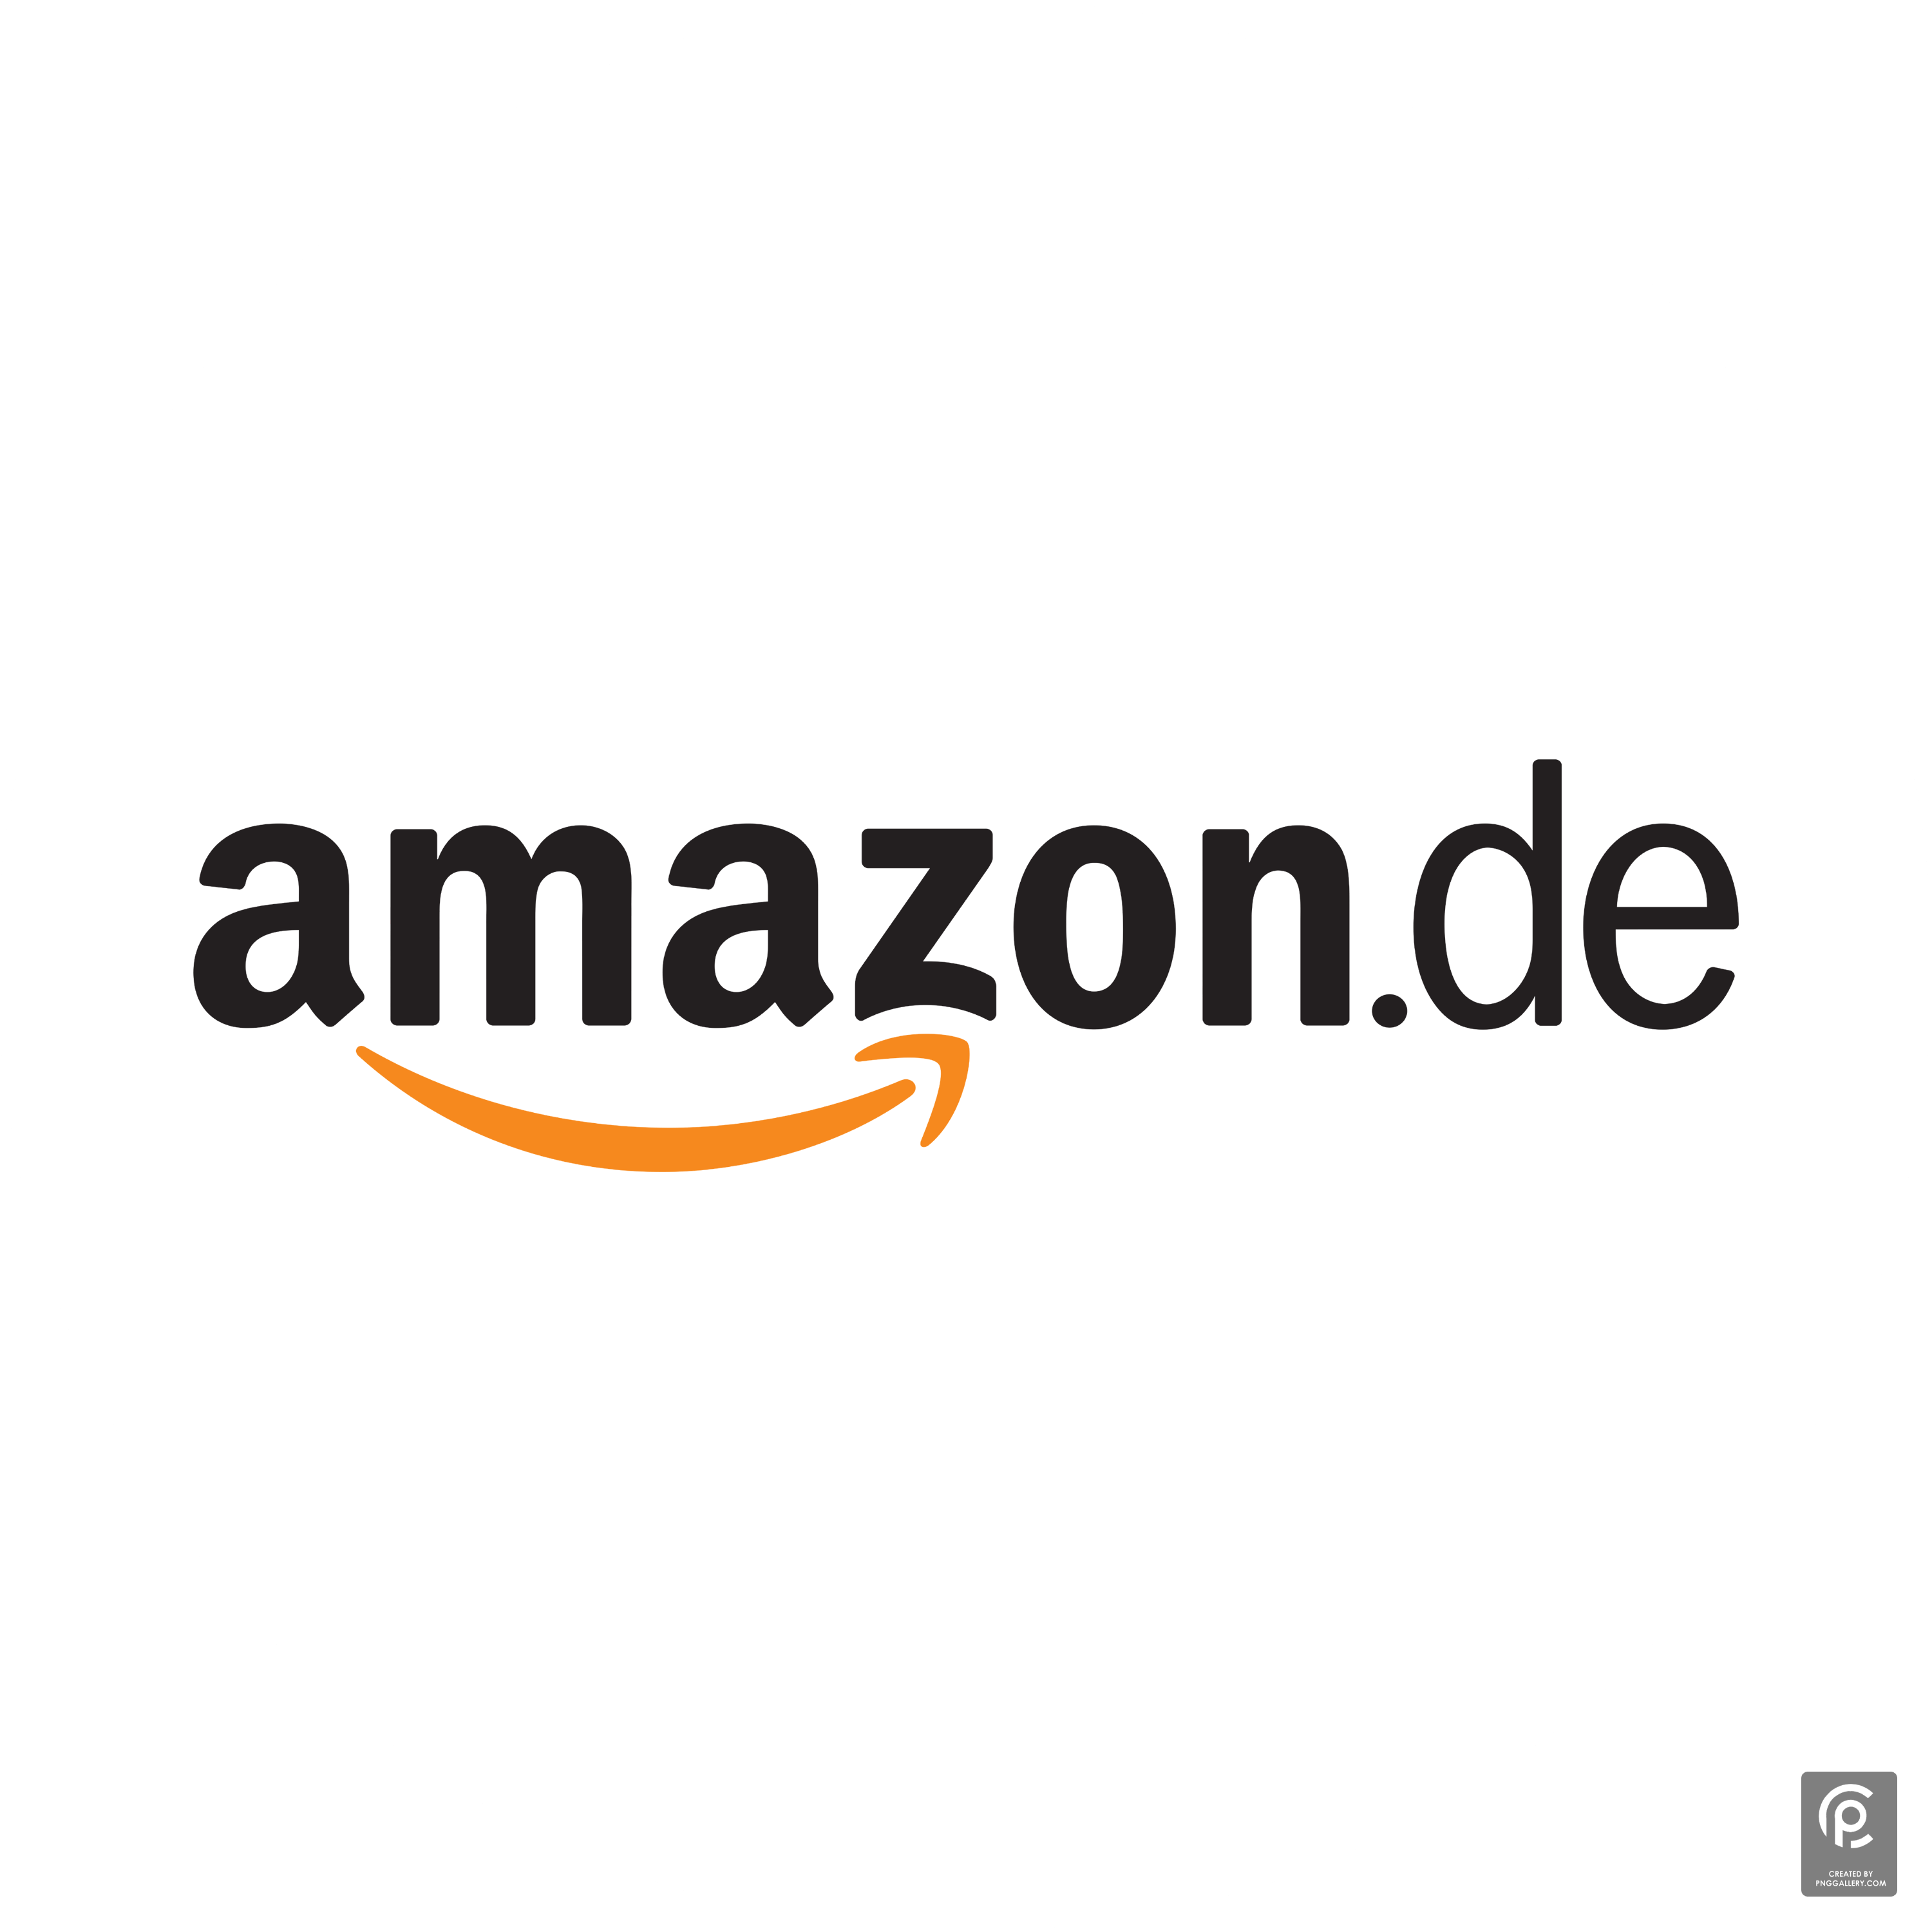 Amazon.de Logo Transparent Clipart